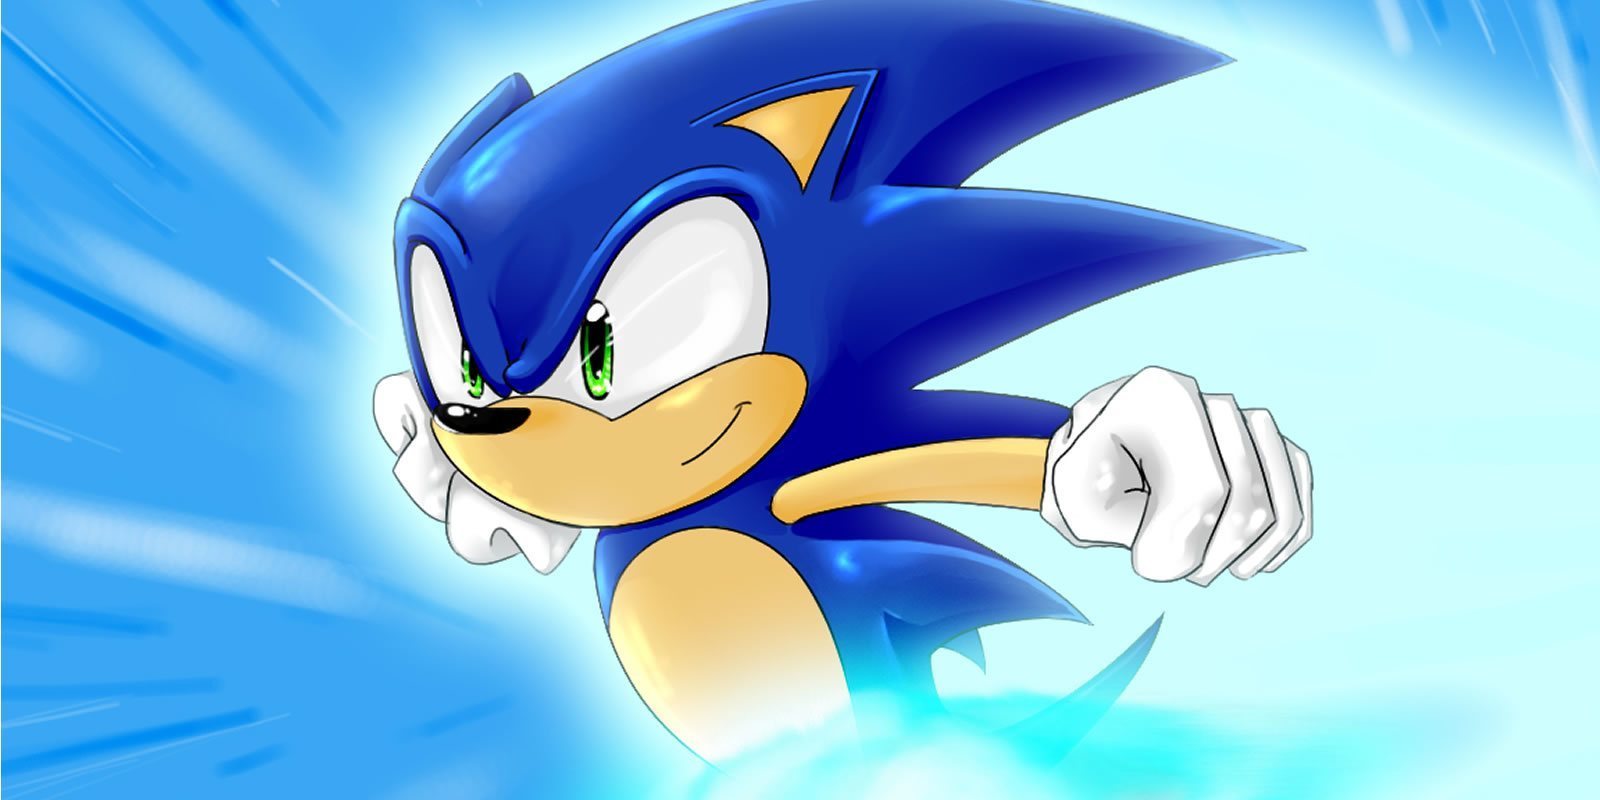 El aspecto de Sonic podría cambiar de aquí al estreno de su película